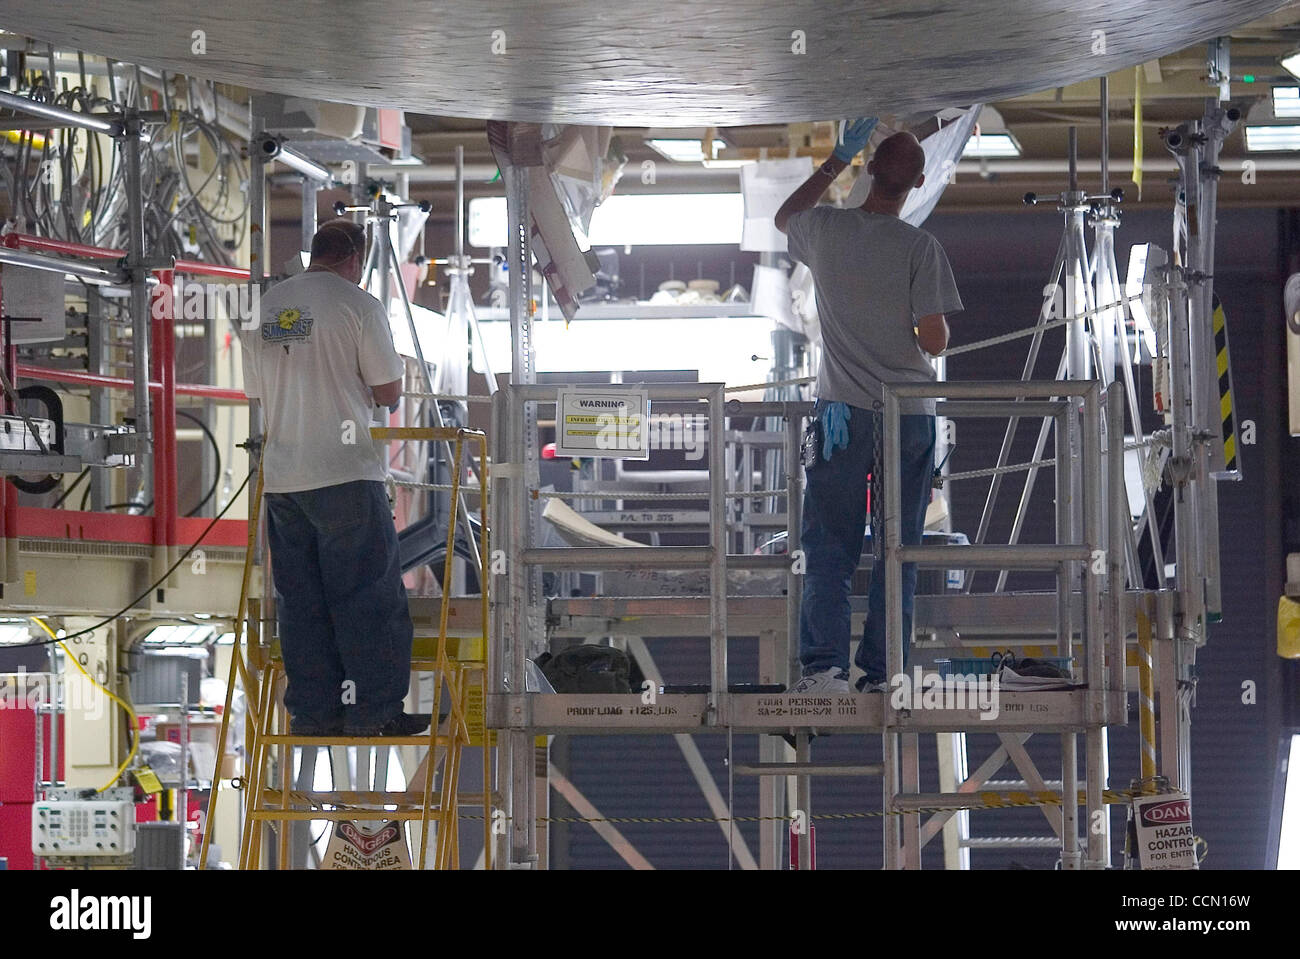 Les techniciens composites Aero remplacer carreaux résistant à la chaleur, à l'avant d'atterrissage de la navette spatiale Discovery au Kennedy Space Center à Cape Canaveral, Floride Vendredi 23 juillet 2004. Photo de CHRIS LIVINGSTON Banque D'Images